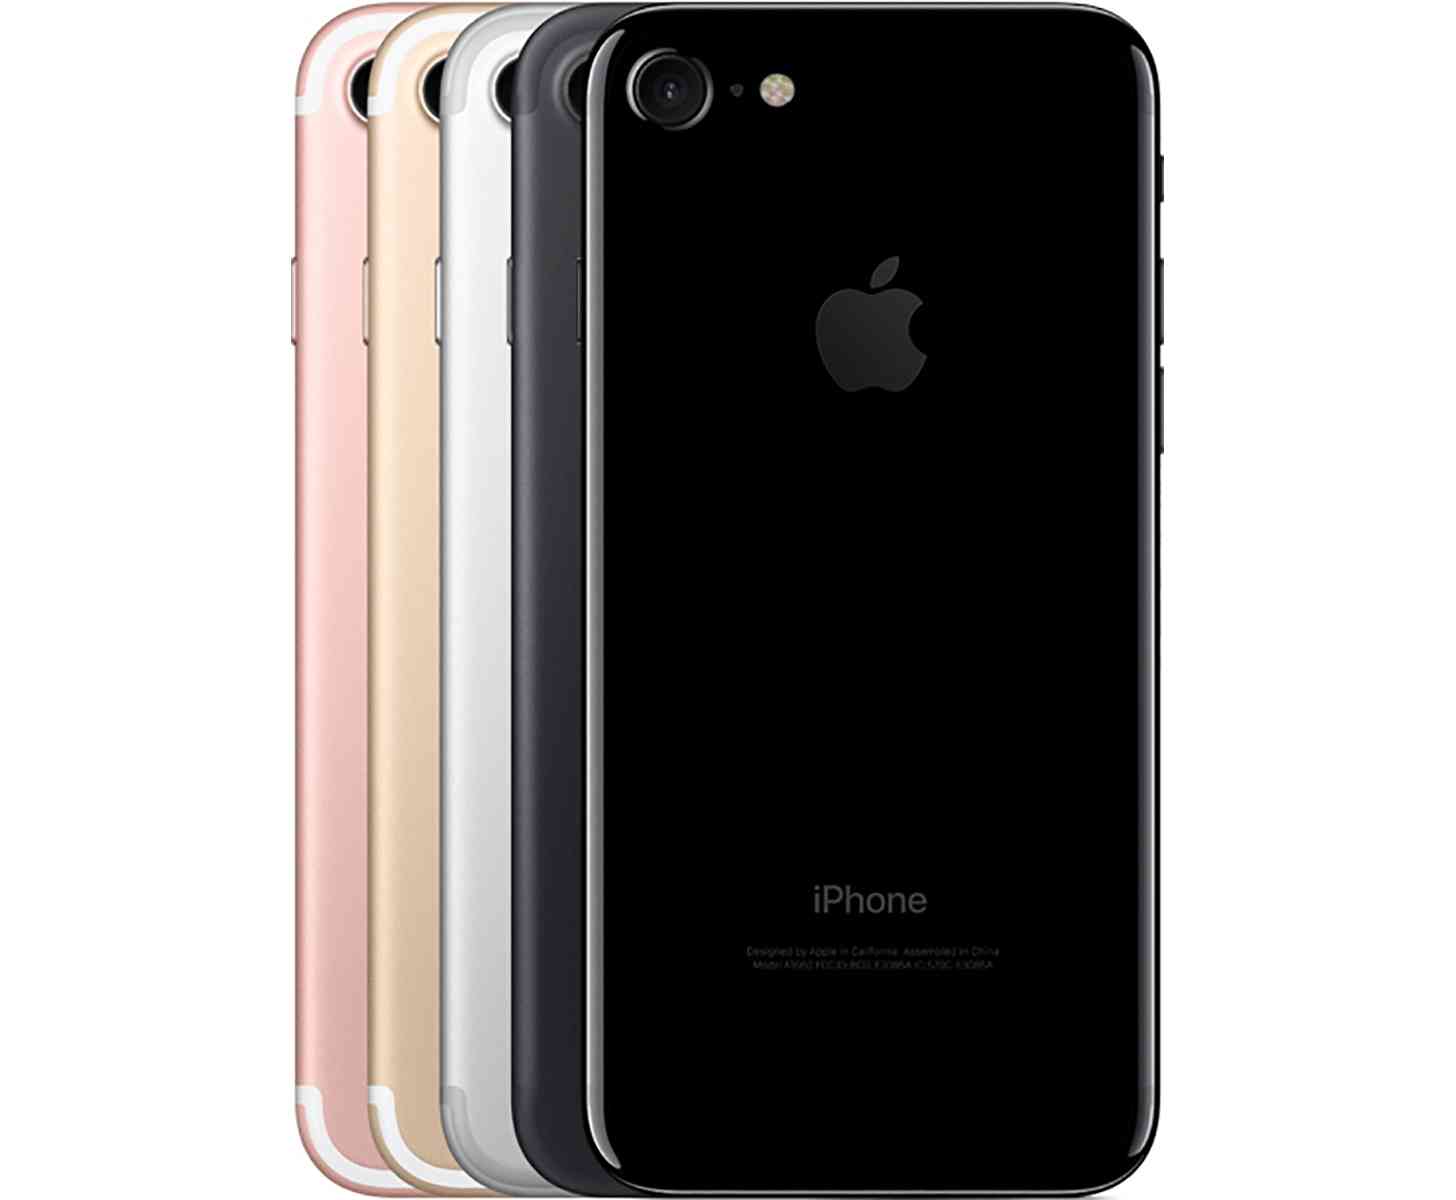 Apple iPhone 7 colors comparison